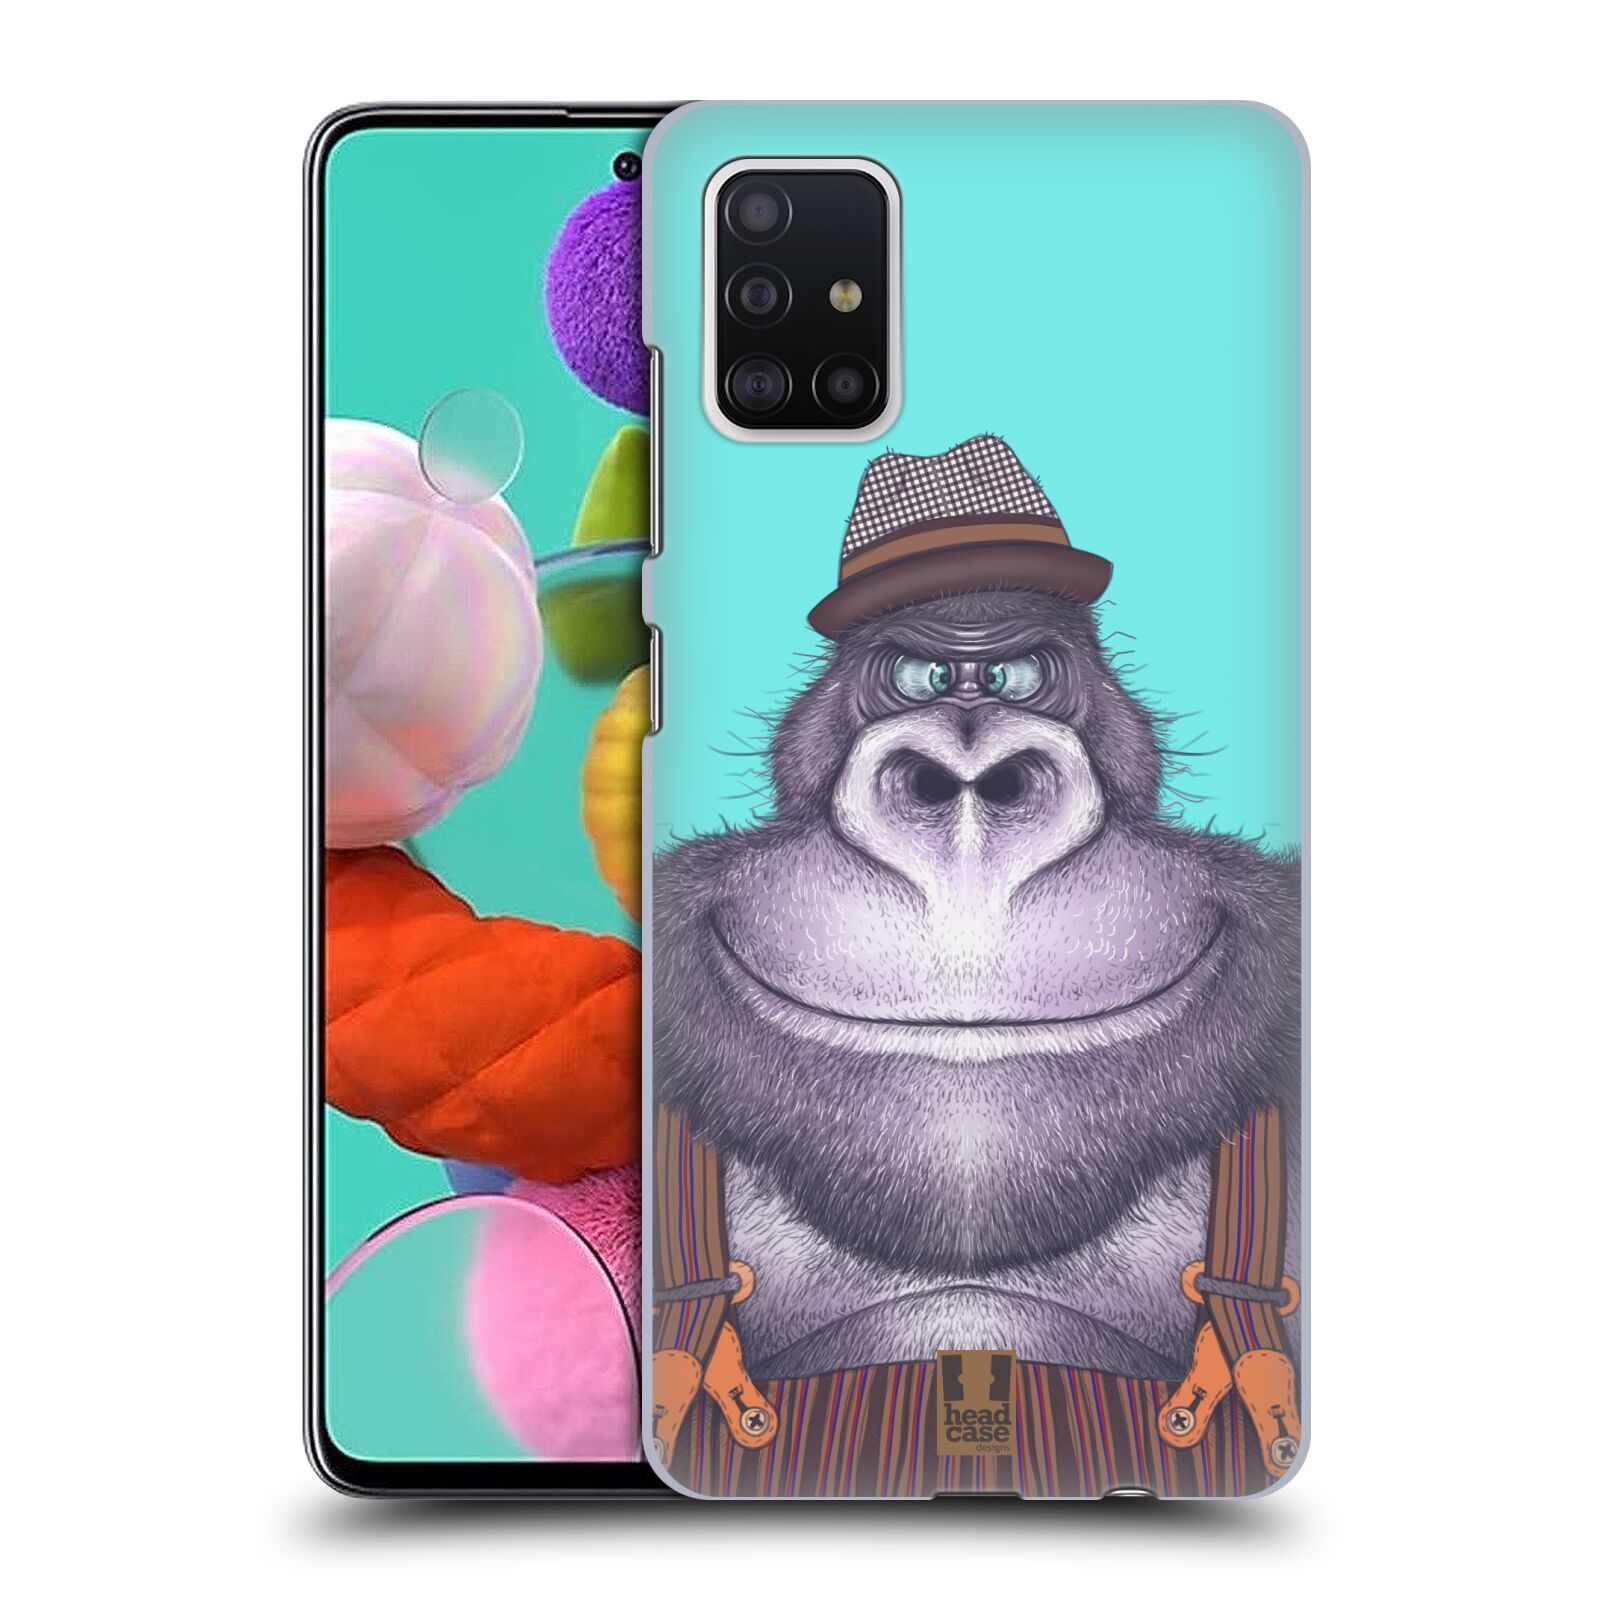 Pouzdro na mobil Samsung Galaxy A51 - HEAD CASE - vzor Kreslená zvířátka gorila